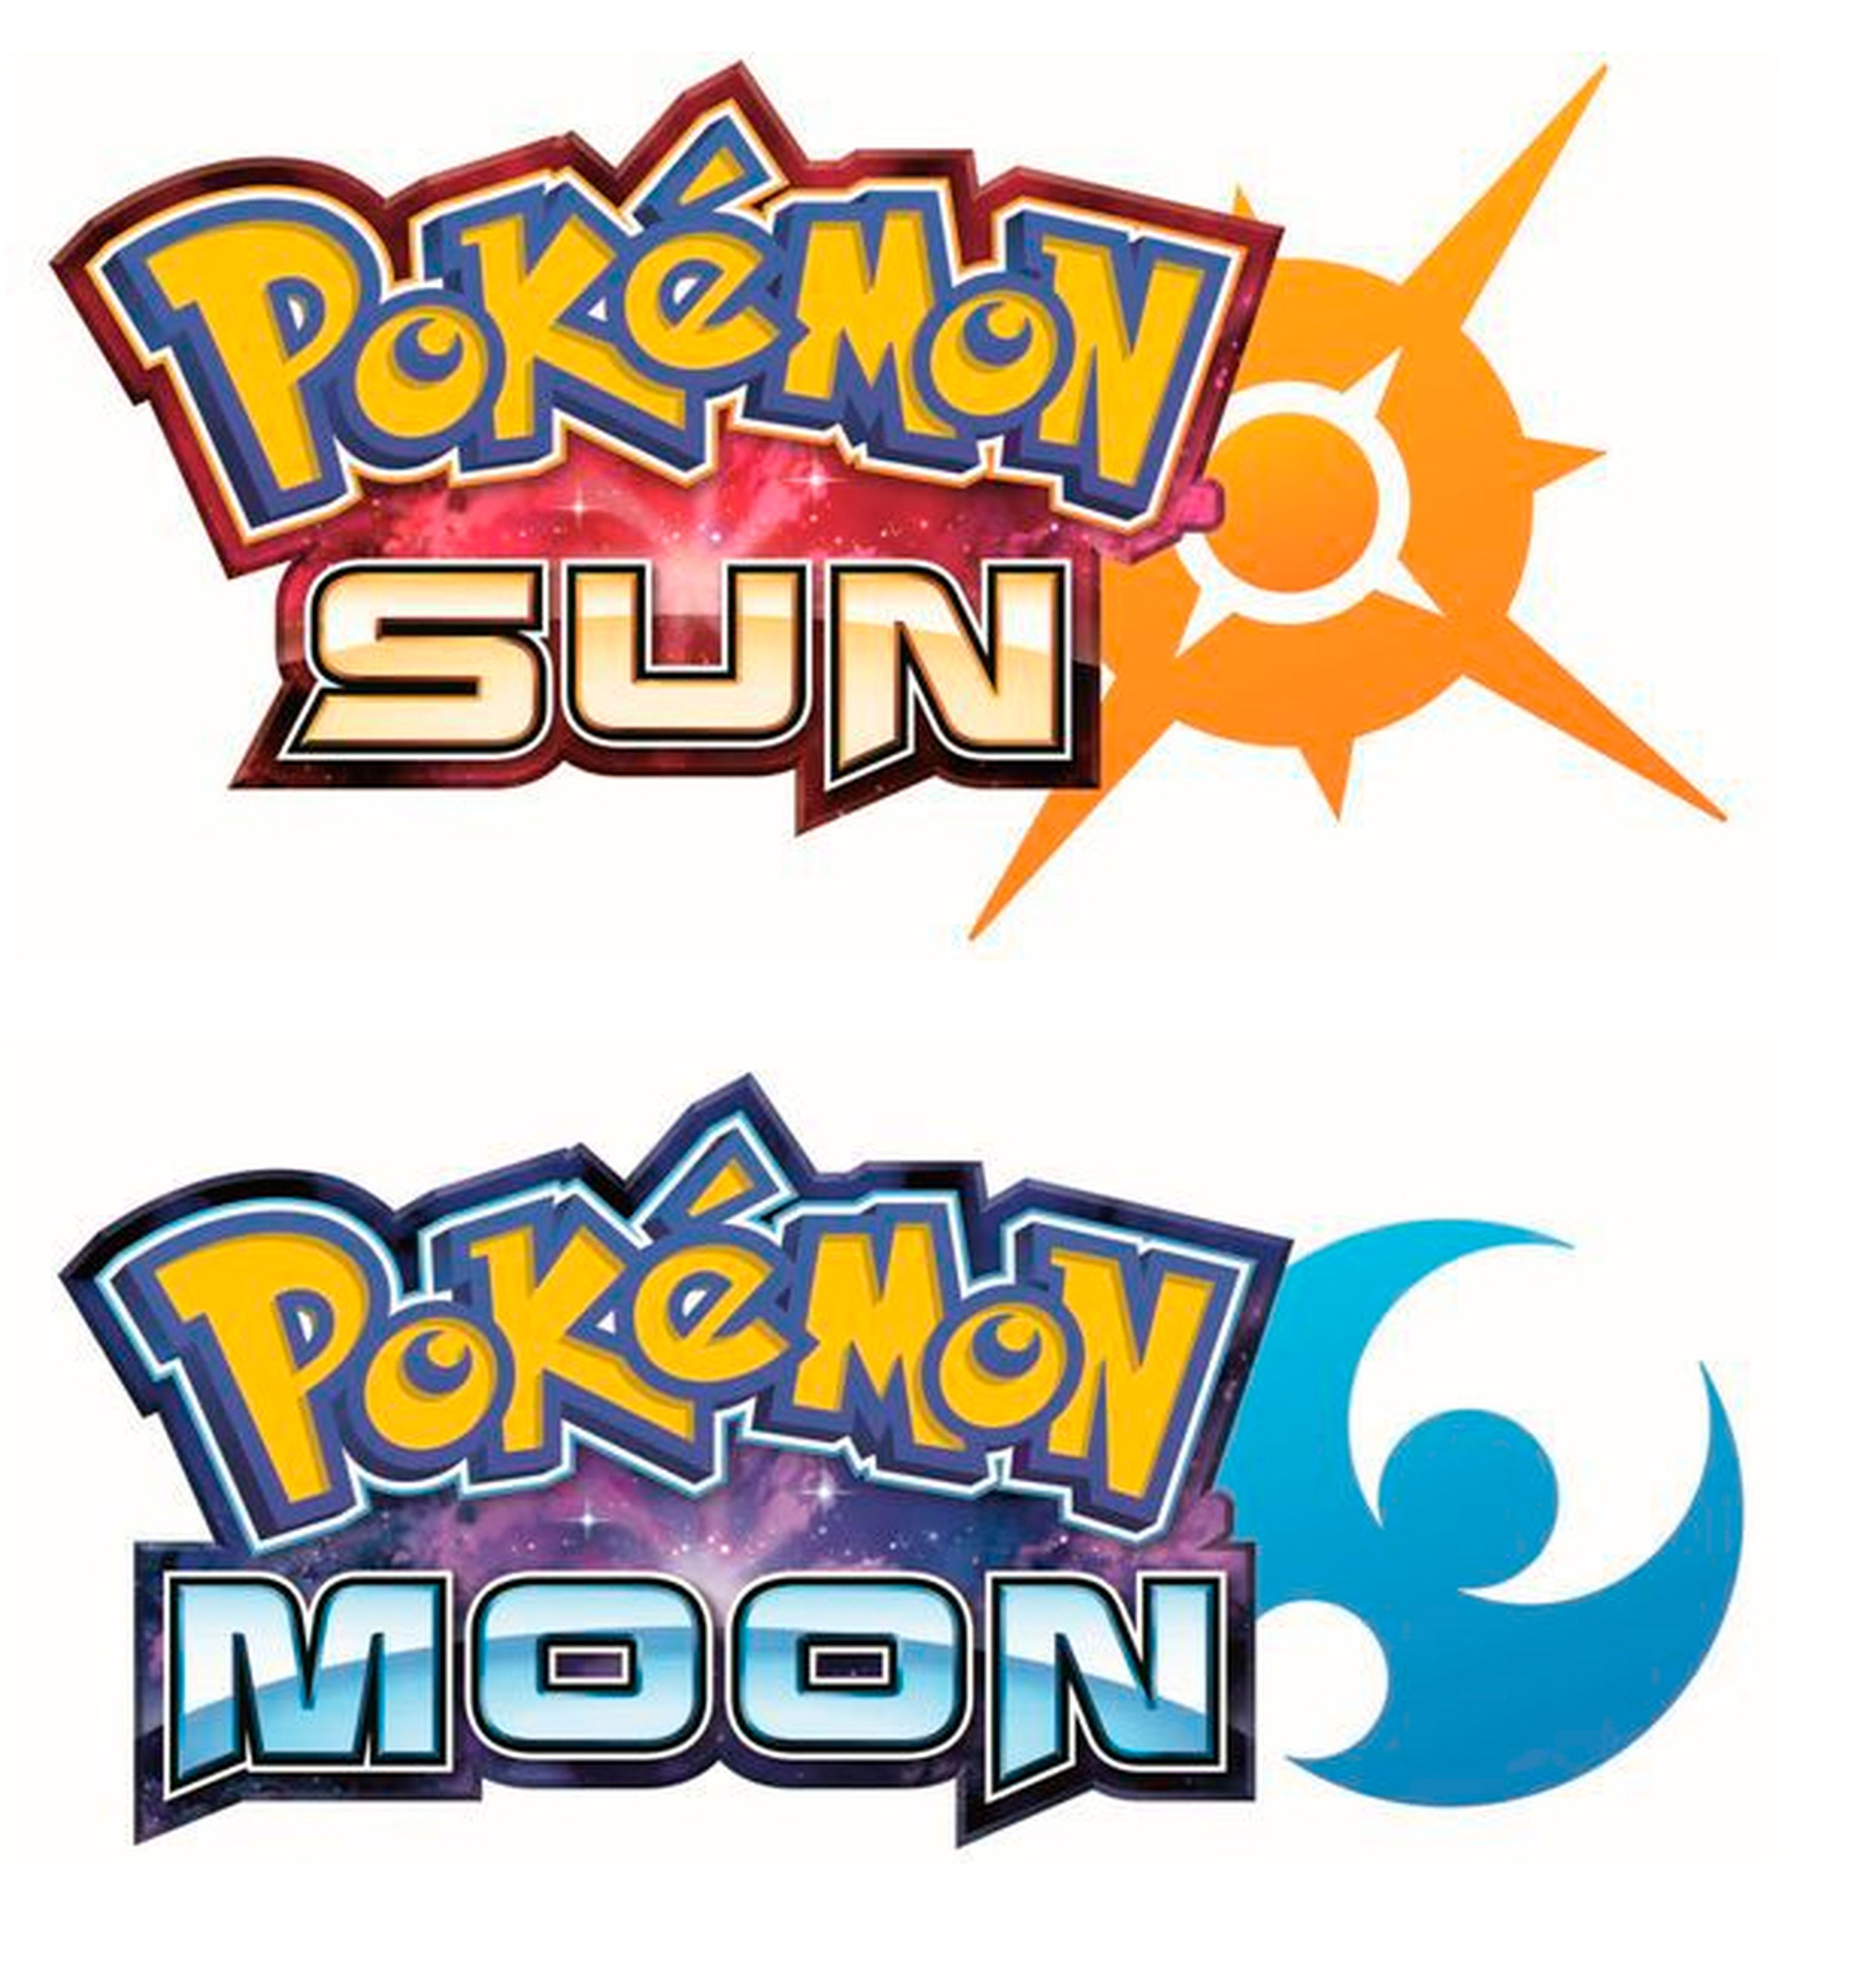 Pokémon Sun y Pokémon Moon - Filtrados los nuevos juegos de Pokémon